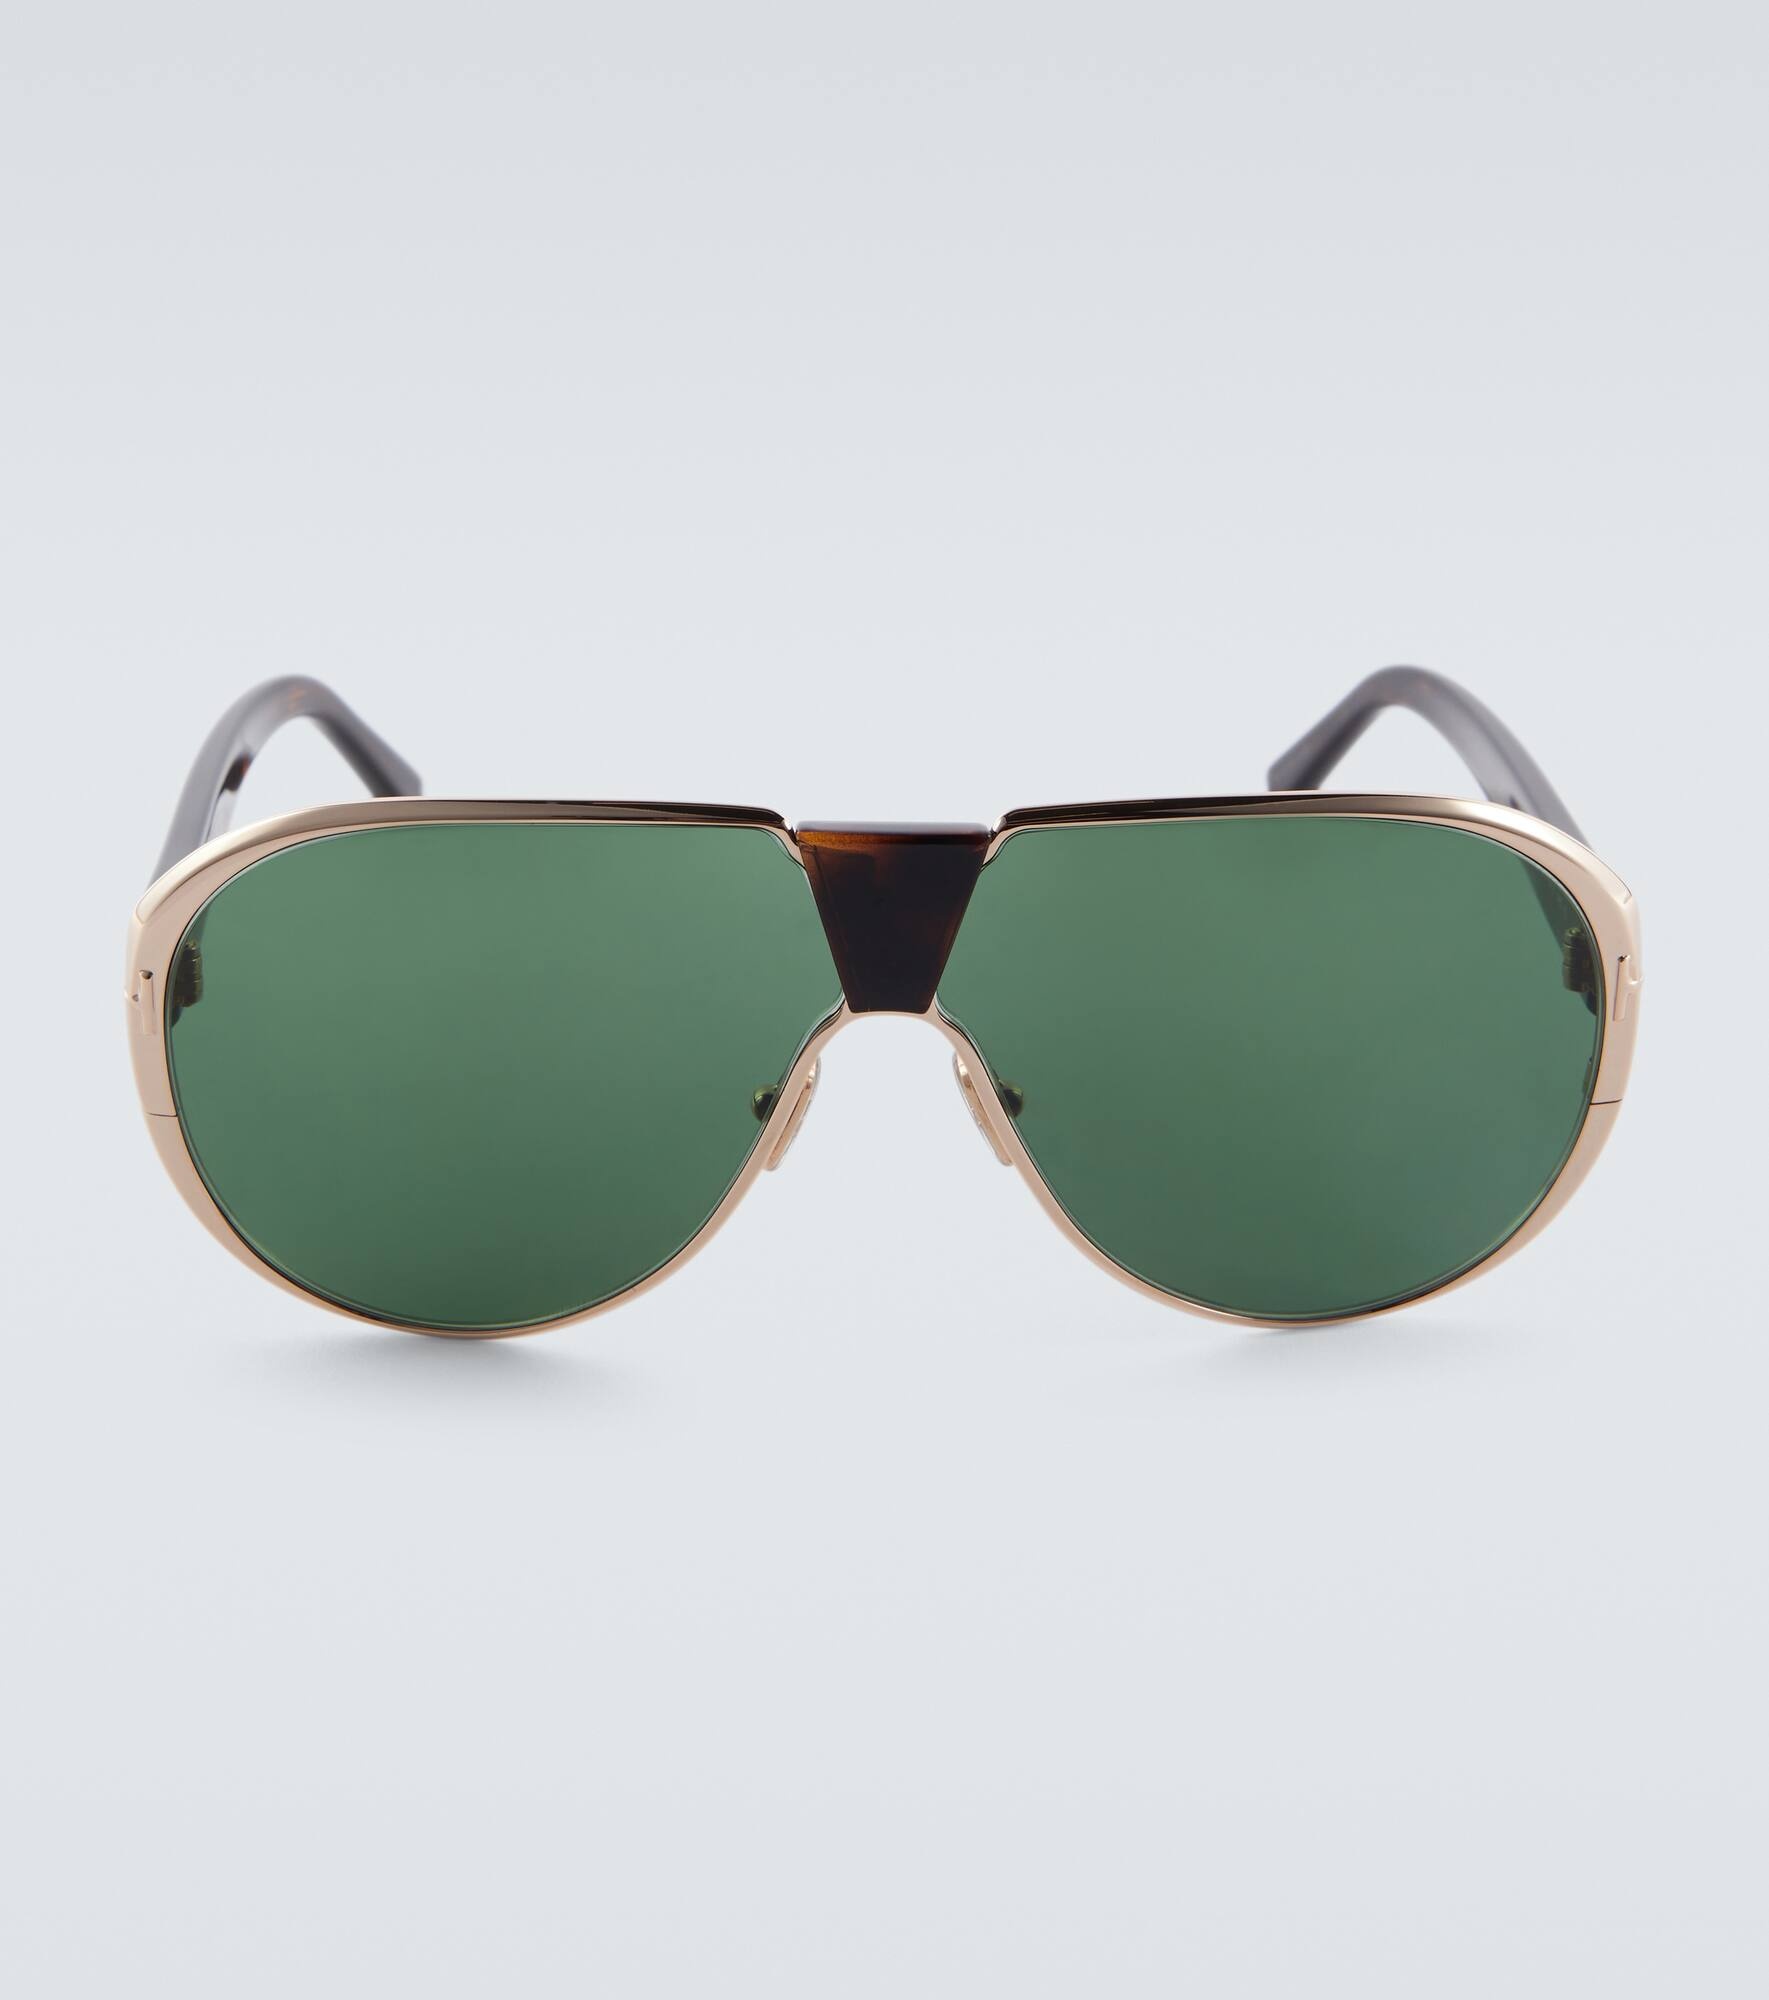 Vincenzo aviator sunglasses - 1